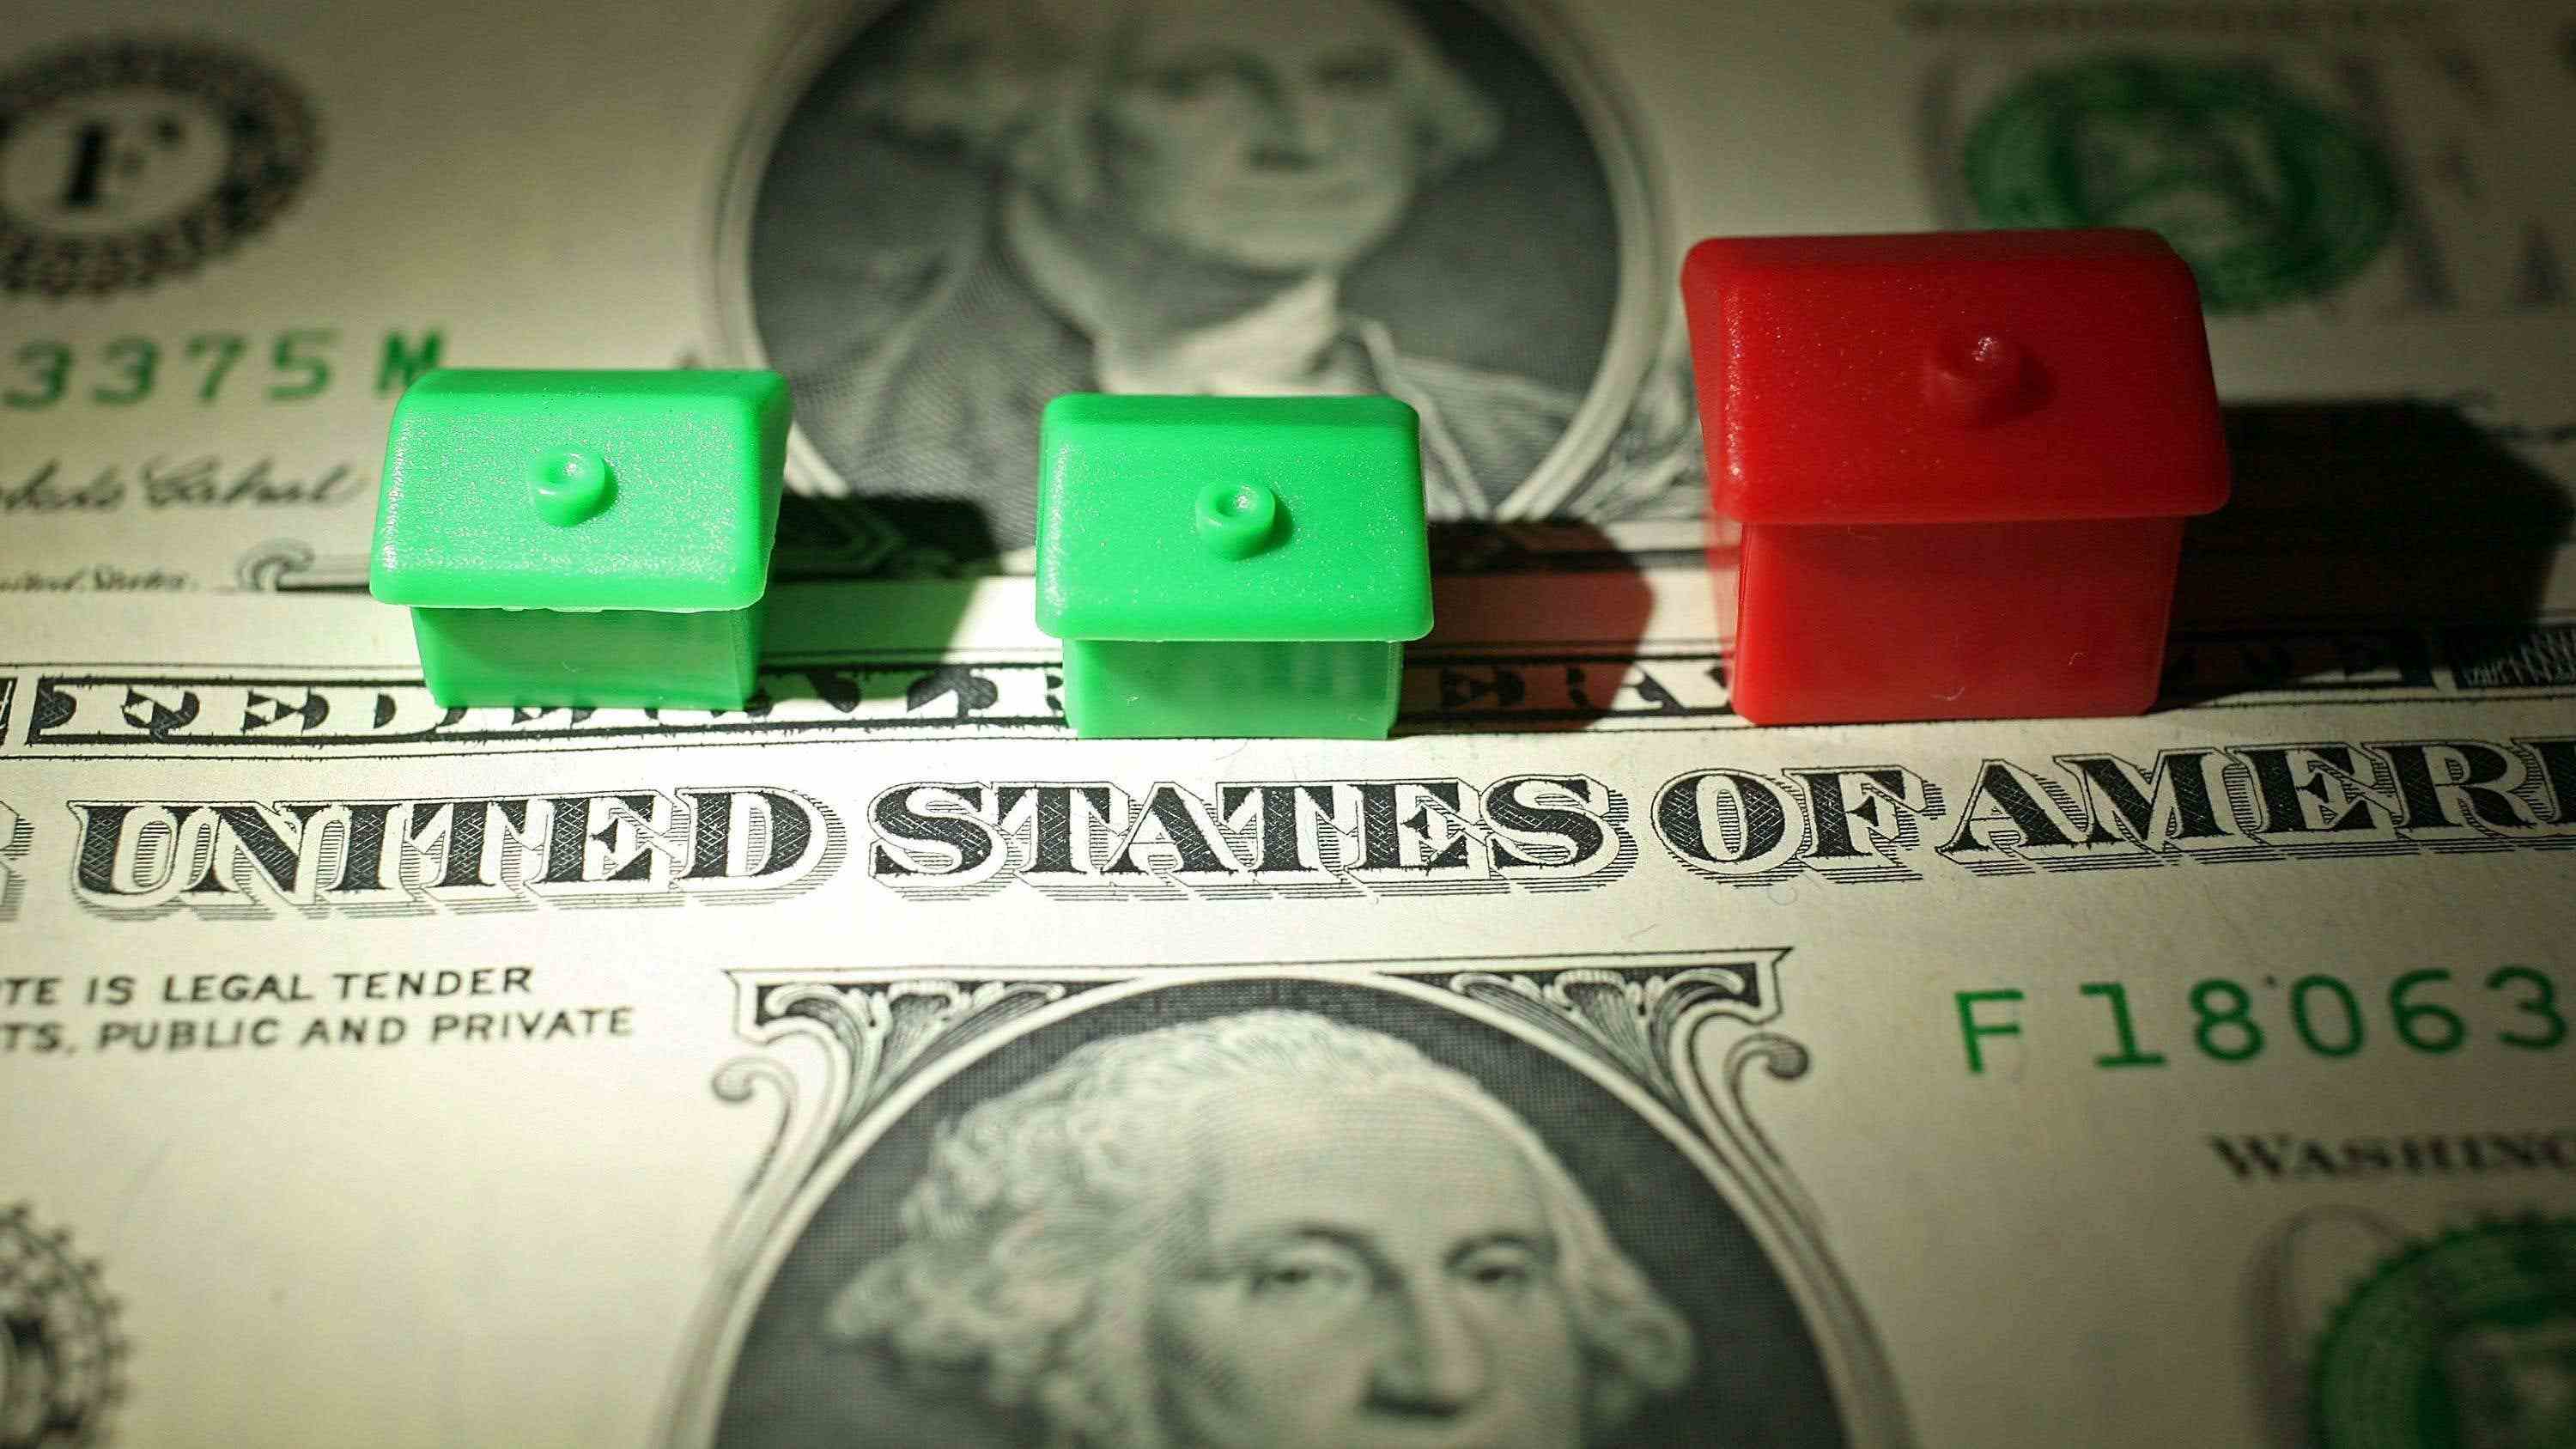 İki yeşil Monopoly evi ve iki adet 1 dolarlık banknotun üstünde bir kırmızı ev